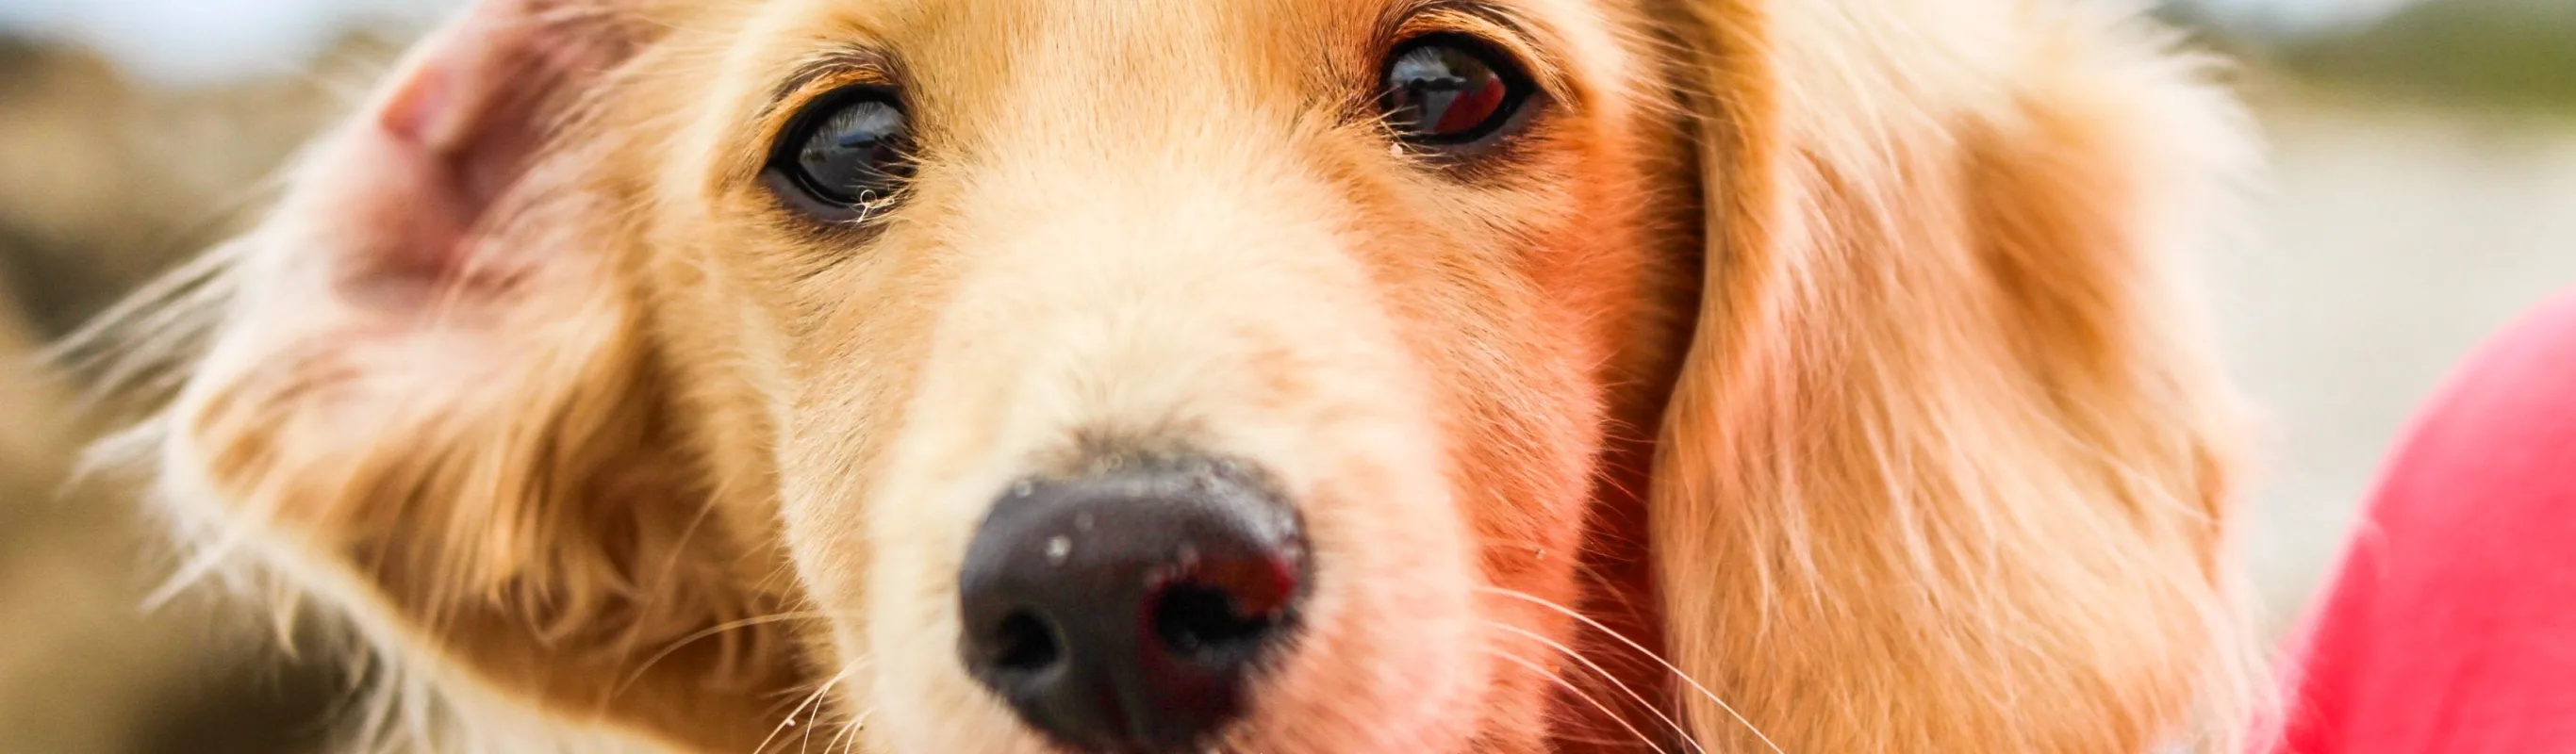 Closeup of a dog